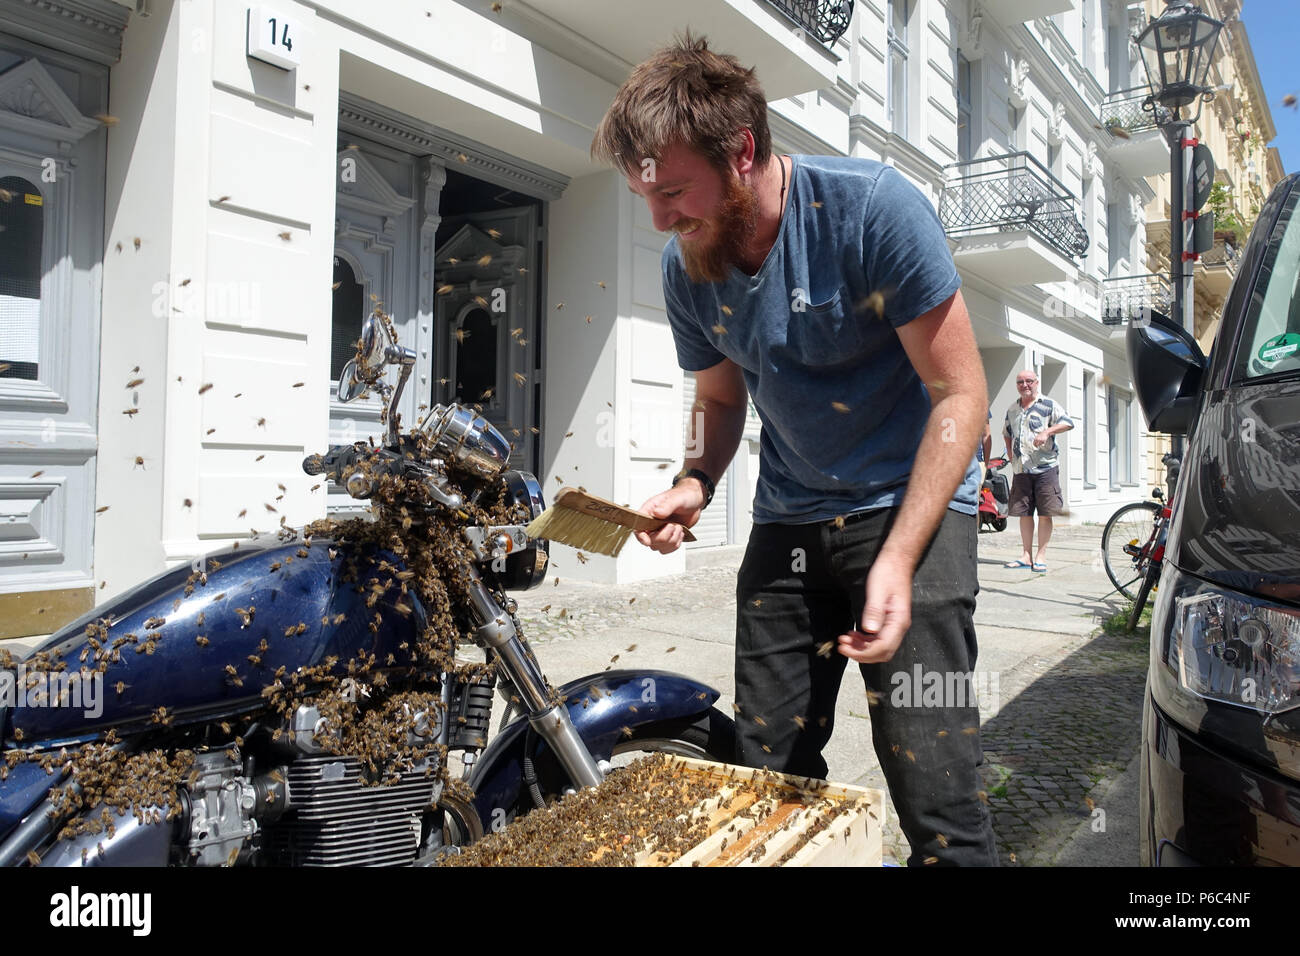 Berlin Kreuzberg, un essaim d'abeilles s'est assis sur une moto et il est pris Banque D'Images